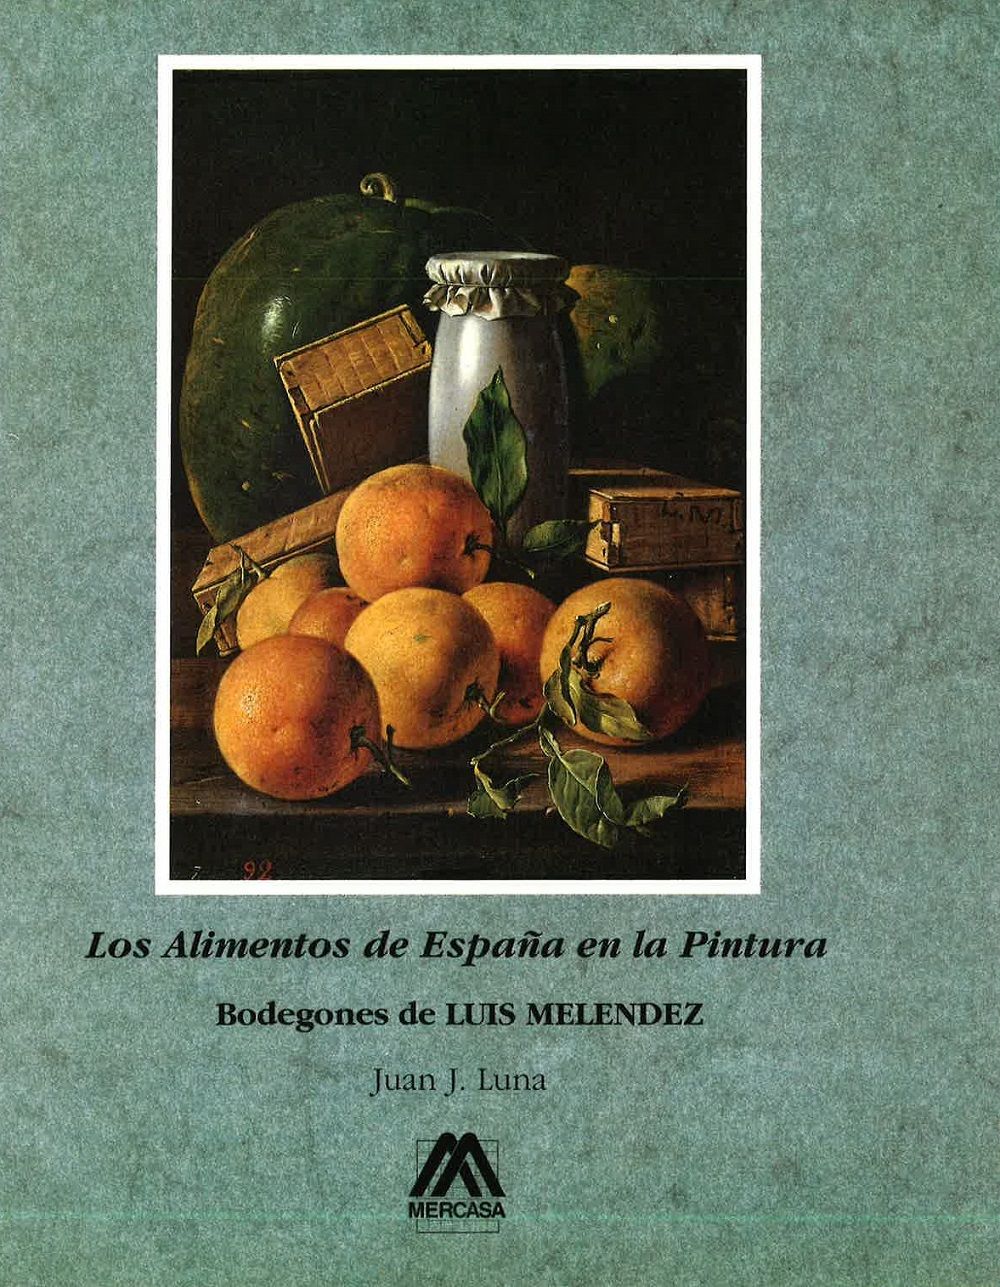 Los Alimentos de España en la pintura 1995